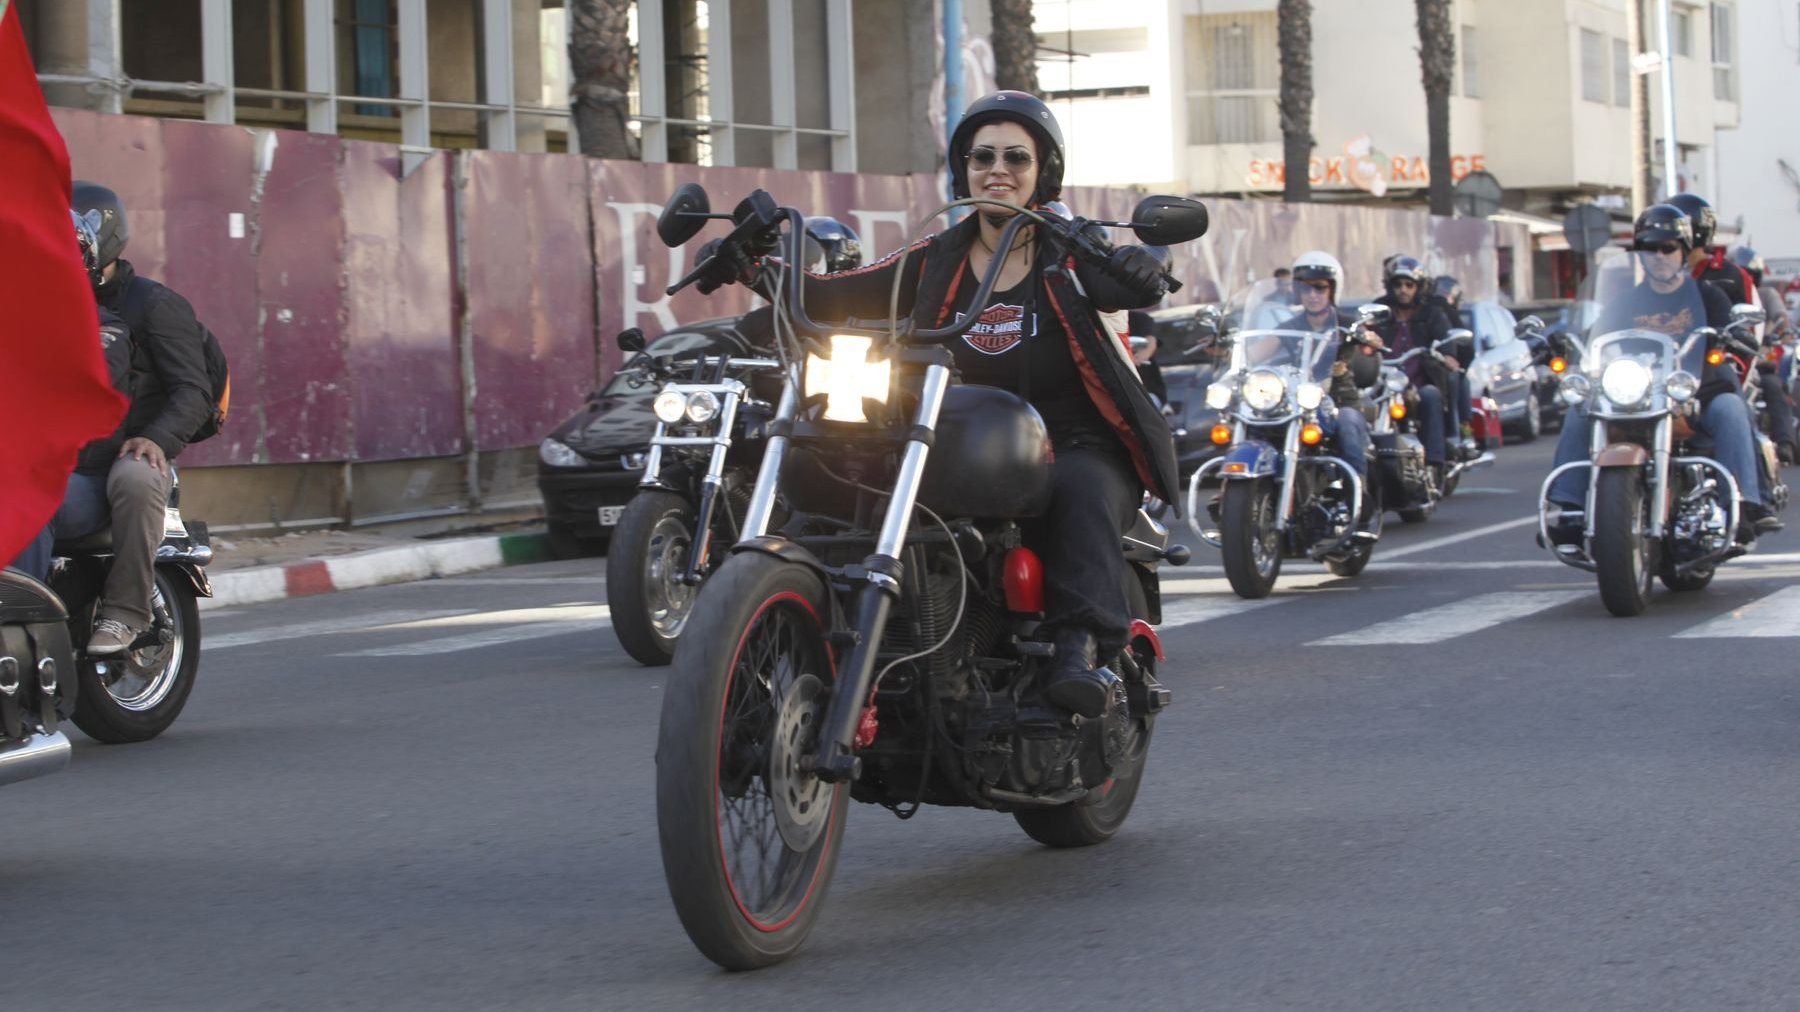 Les motos se suivent et ne se ressemblent pas. Cette femme motard conduit en souriant un magnifique bolide. 
